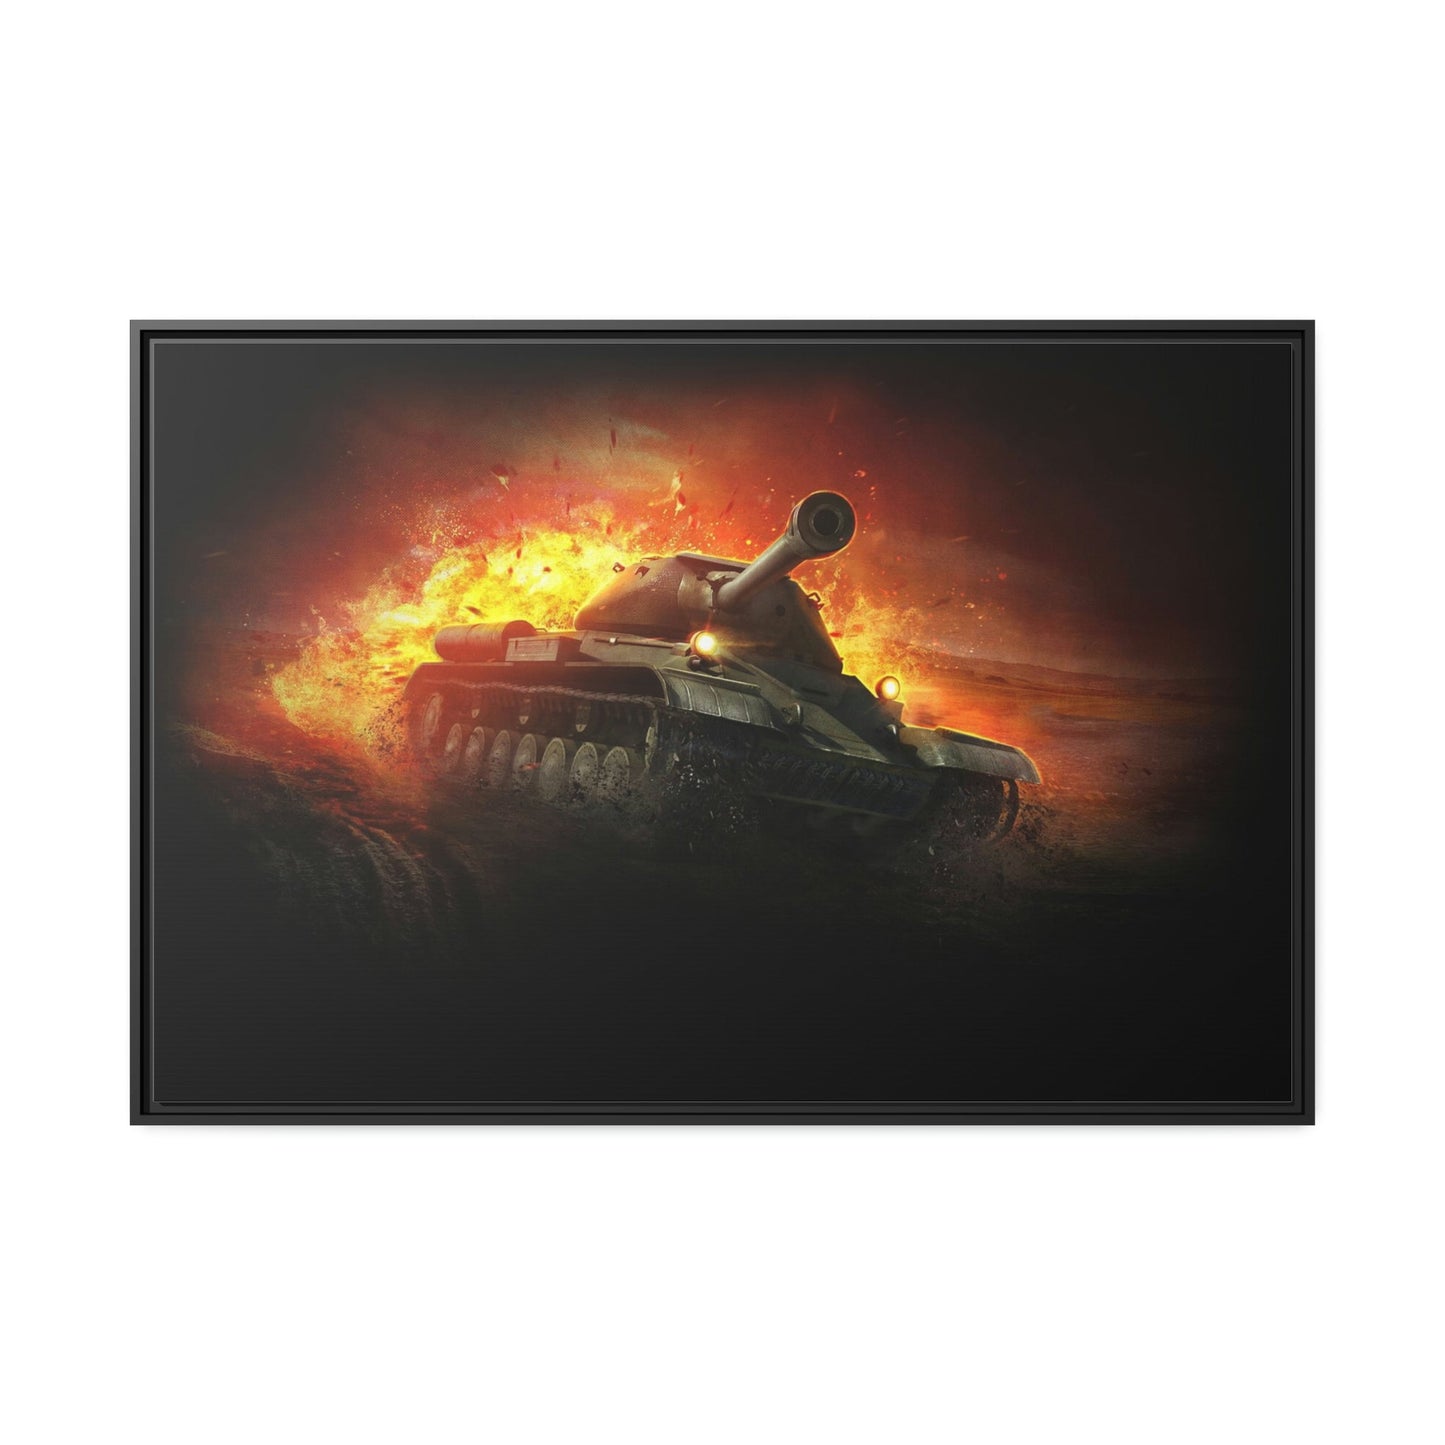 Legendary Battles: Framed Poster Celebrating World of Tanks Heroes